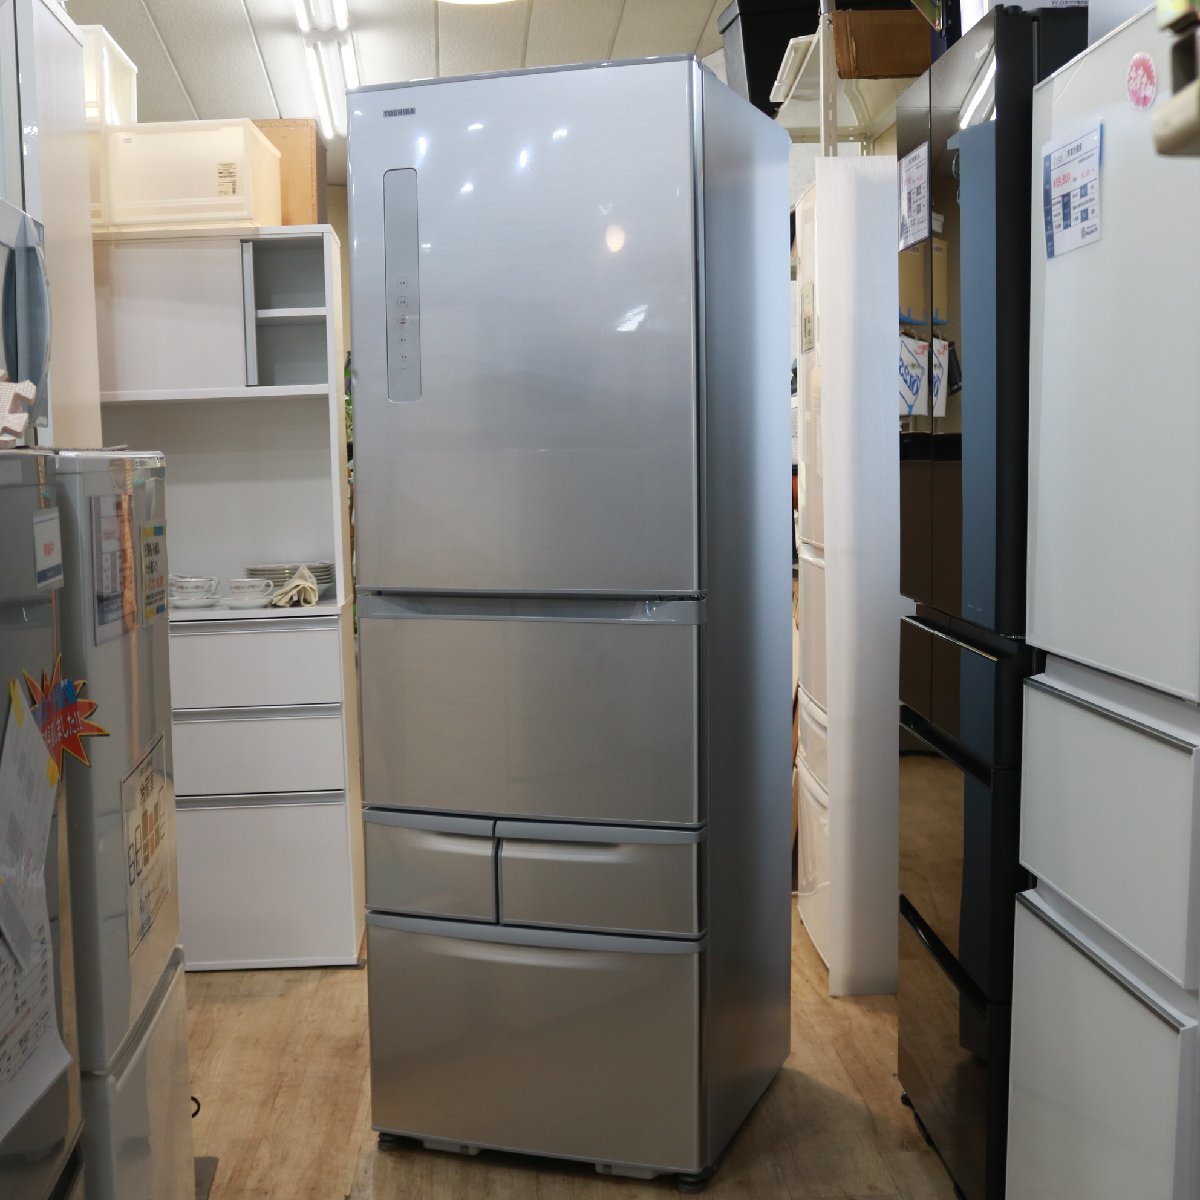 川崎市川崎区にて 東芝 冷蔵庫 GR-M41G-S 2018年製 を出張買取させて頂きました。